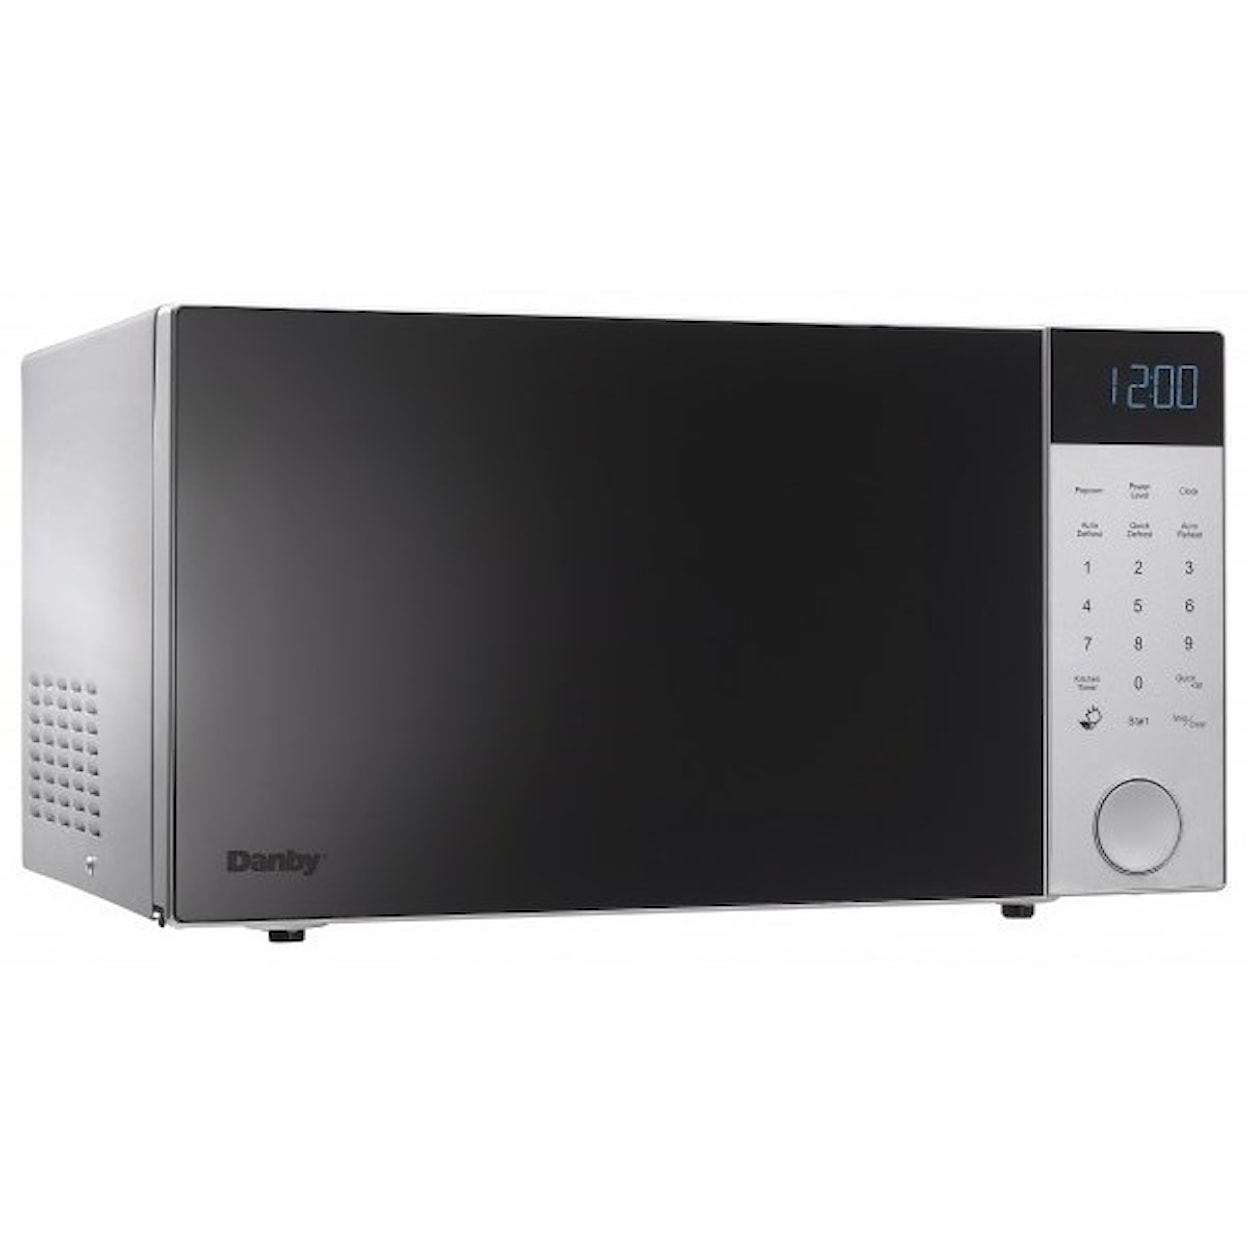 Danby Microwaves 1.4 cu. ft. Microwave